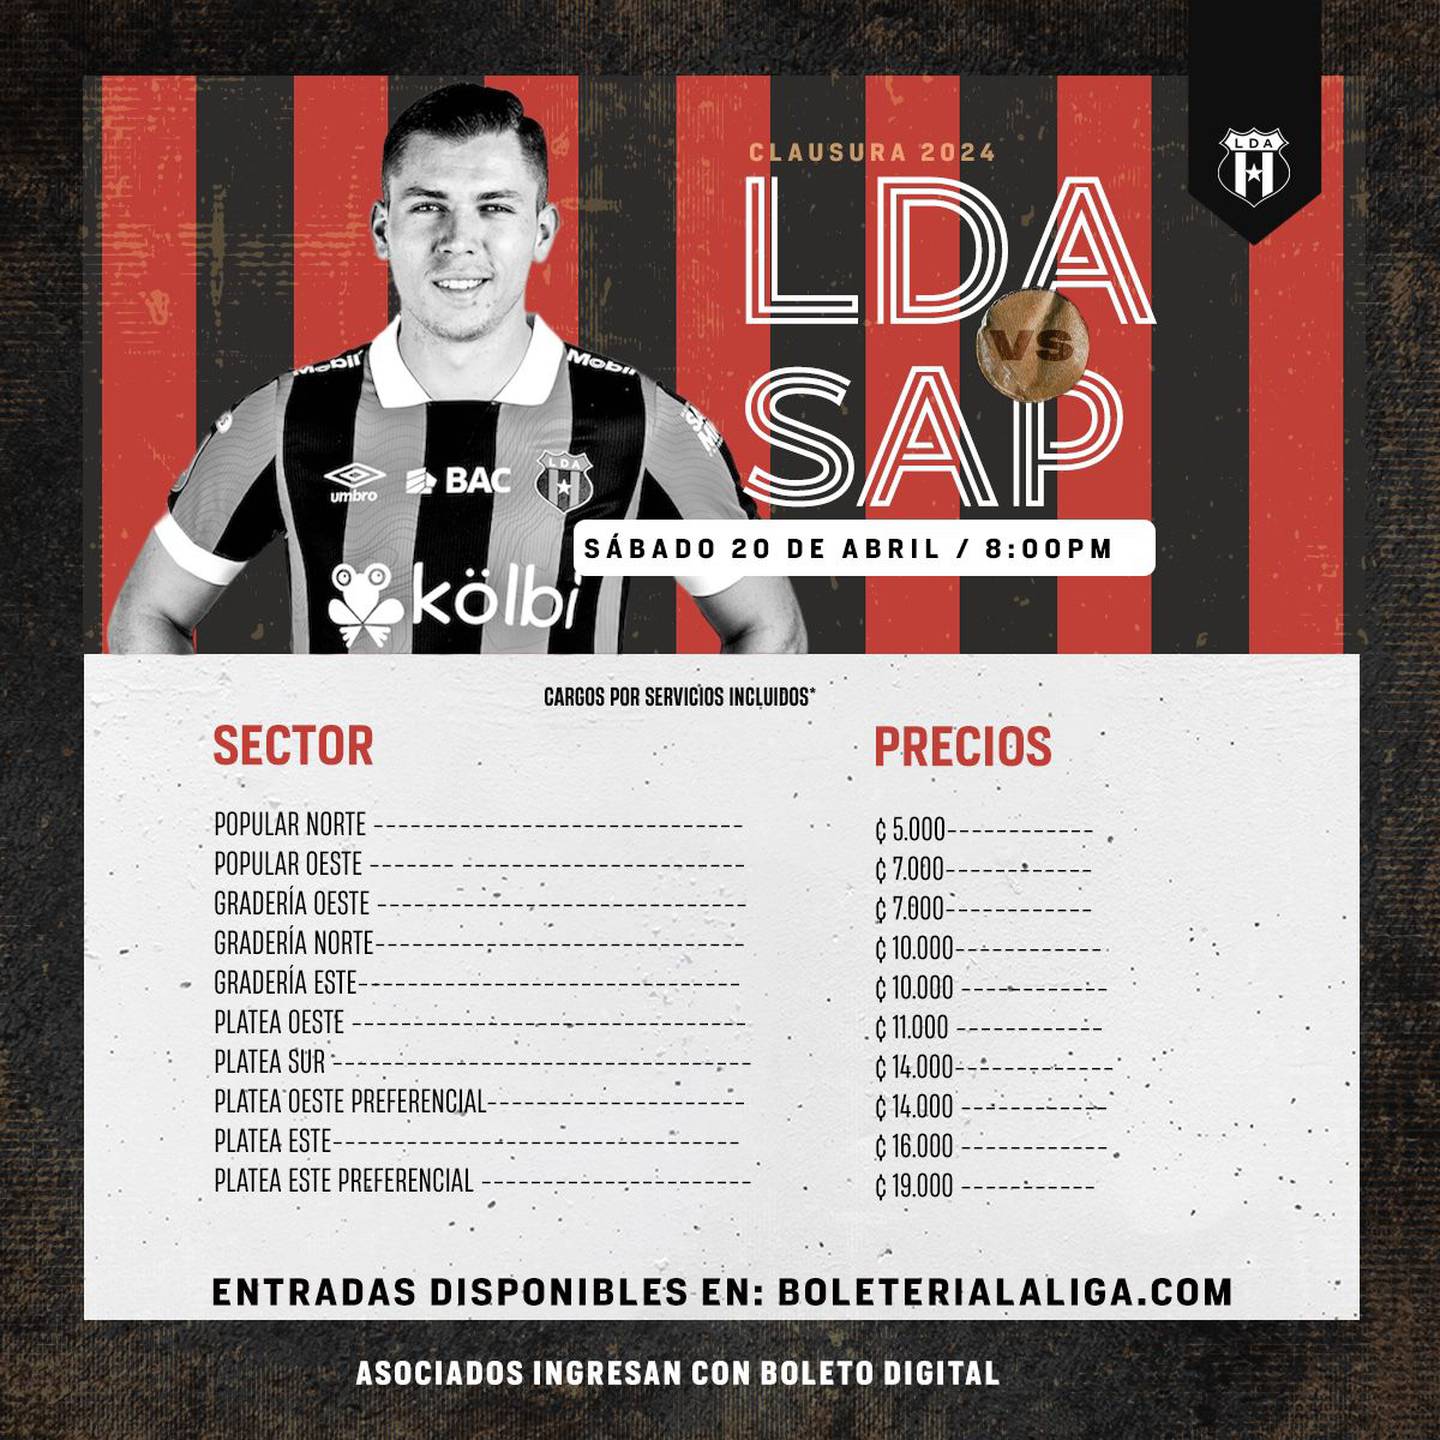 Las entradas para el clásico entre Liga Deportiva Alajuelense y Saprissa están disponibles en boleterialaliga.com desde el viernes 12 de abril.